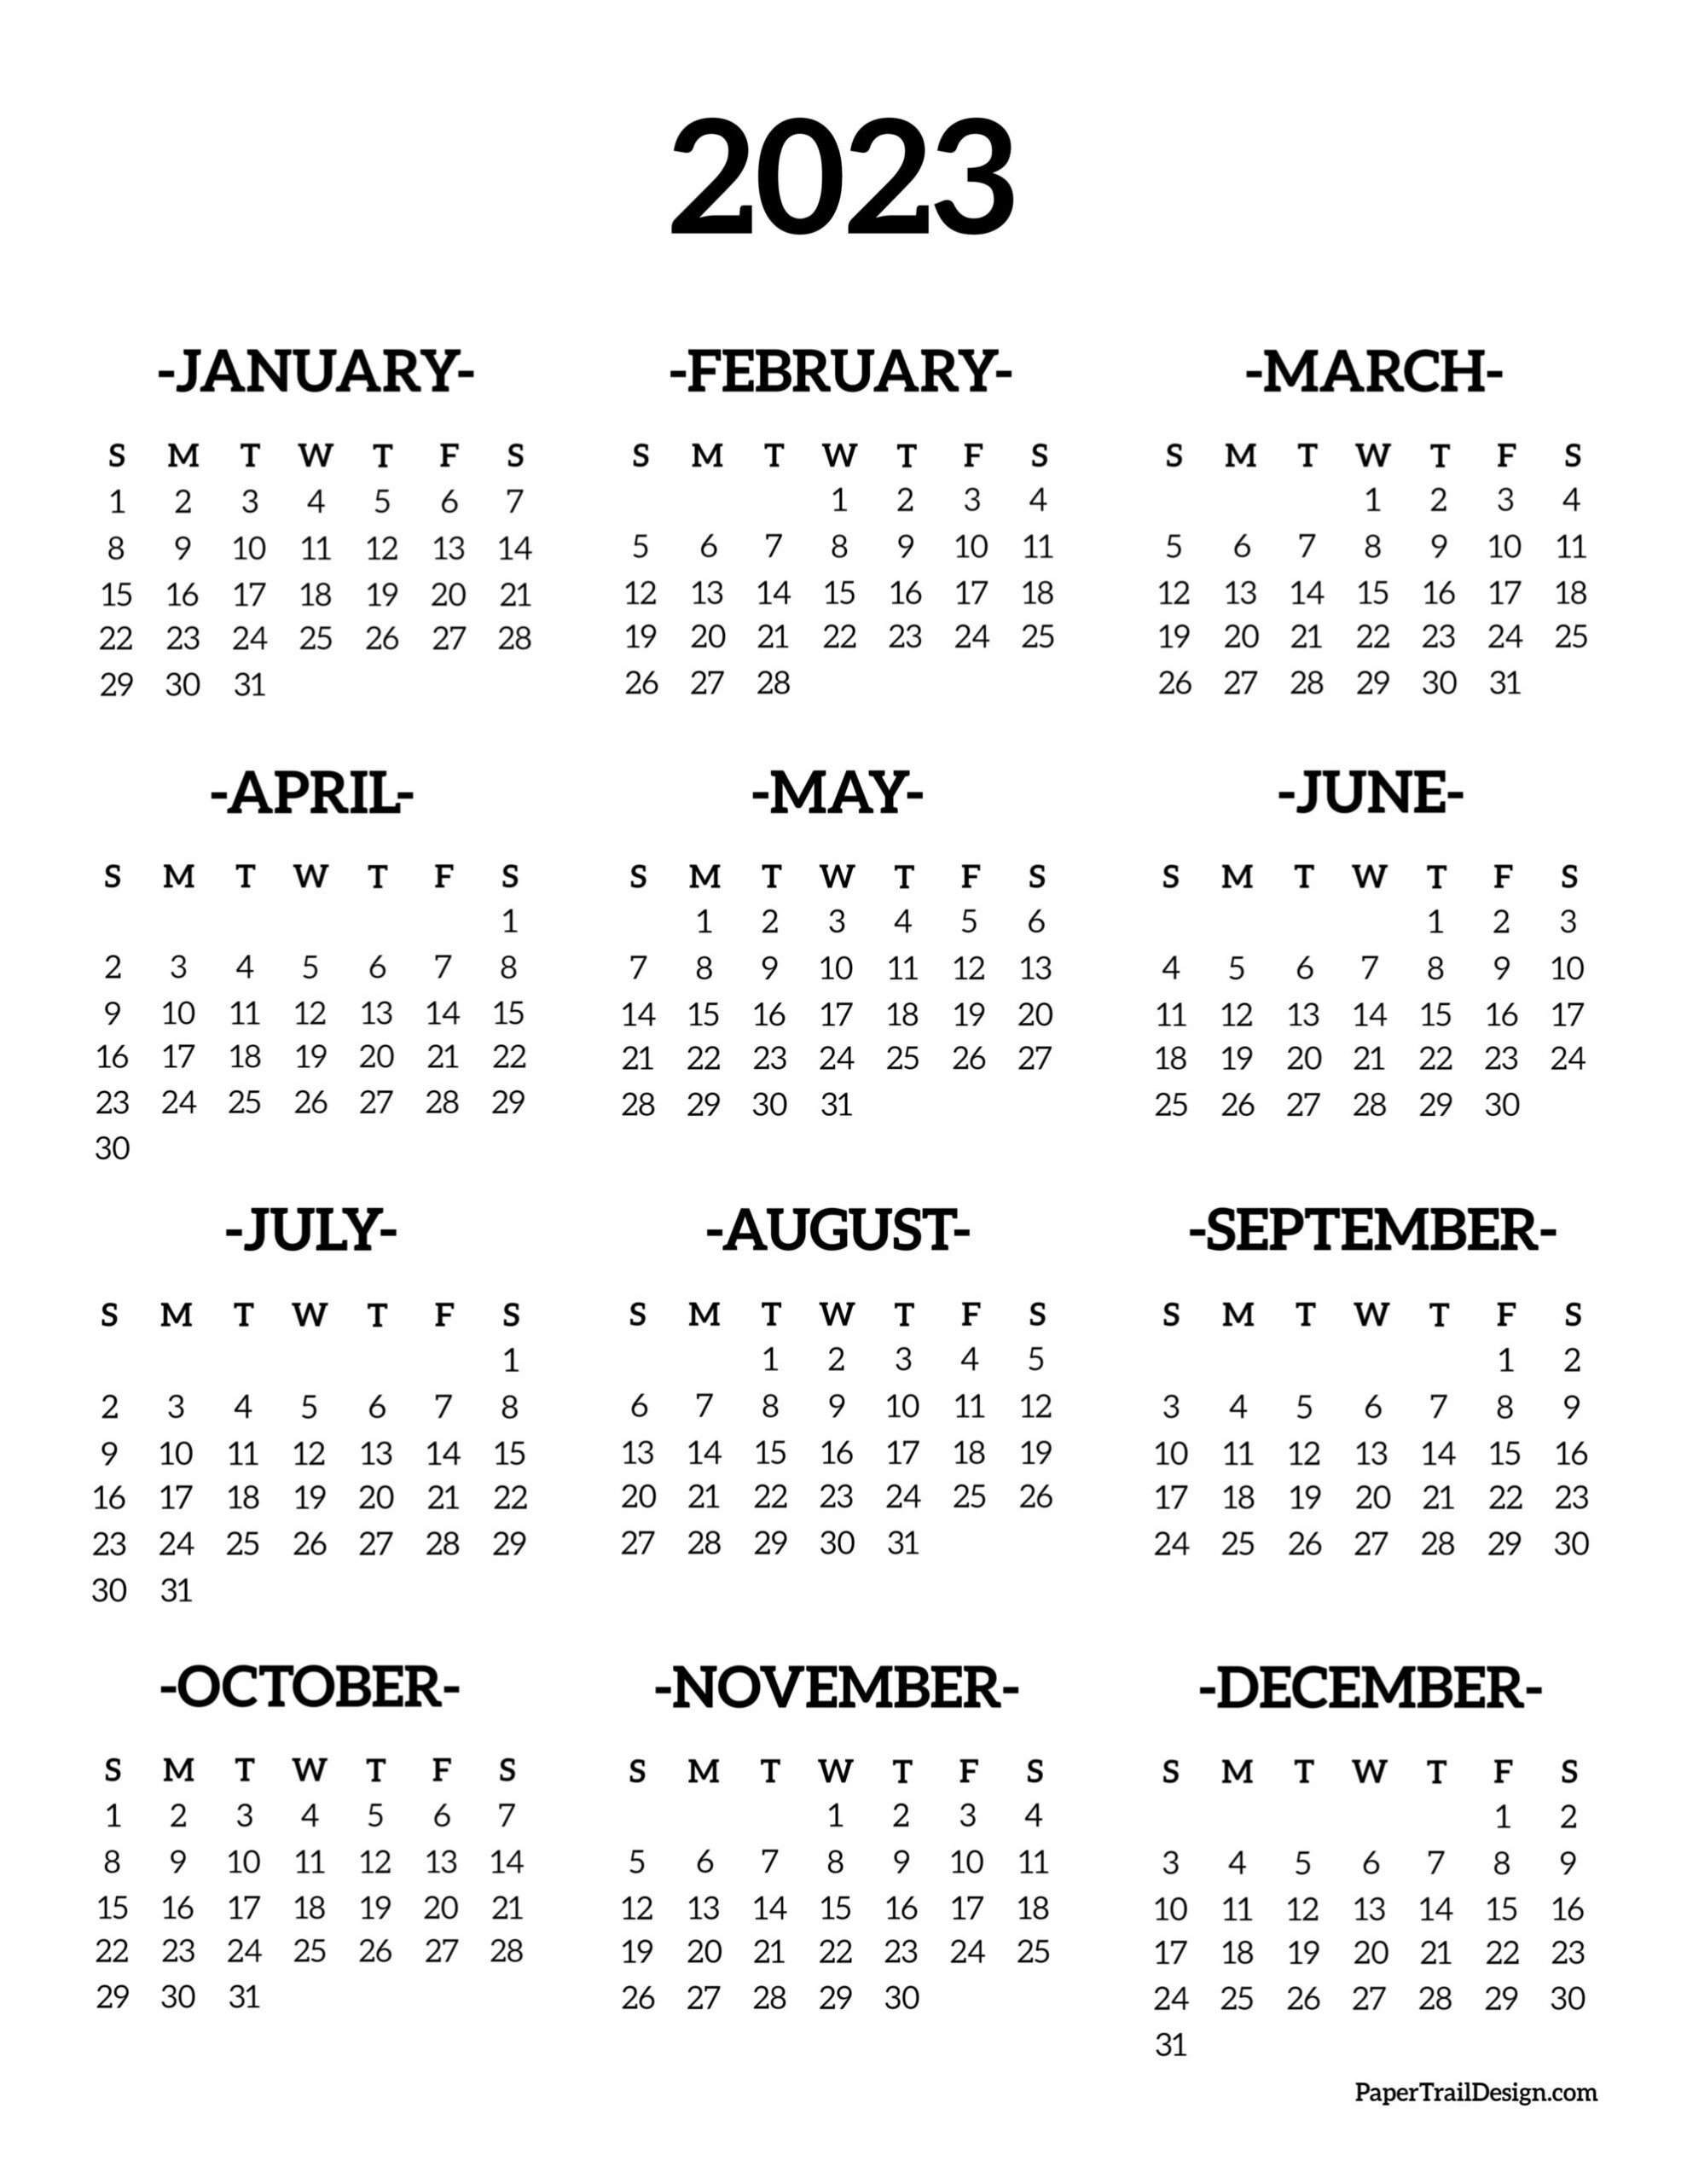 2023 Calendar Crownflourmills